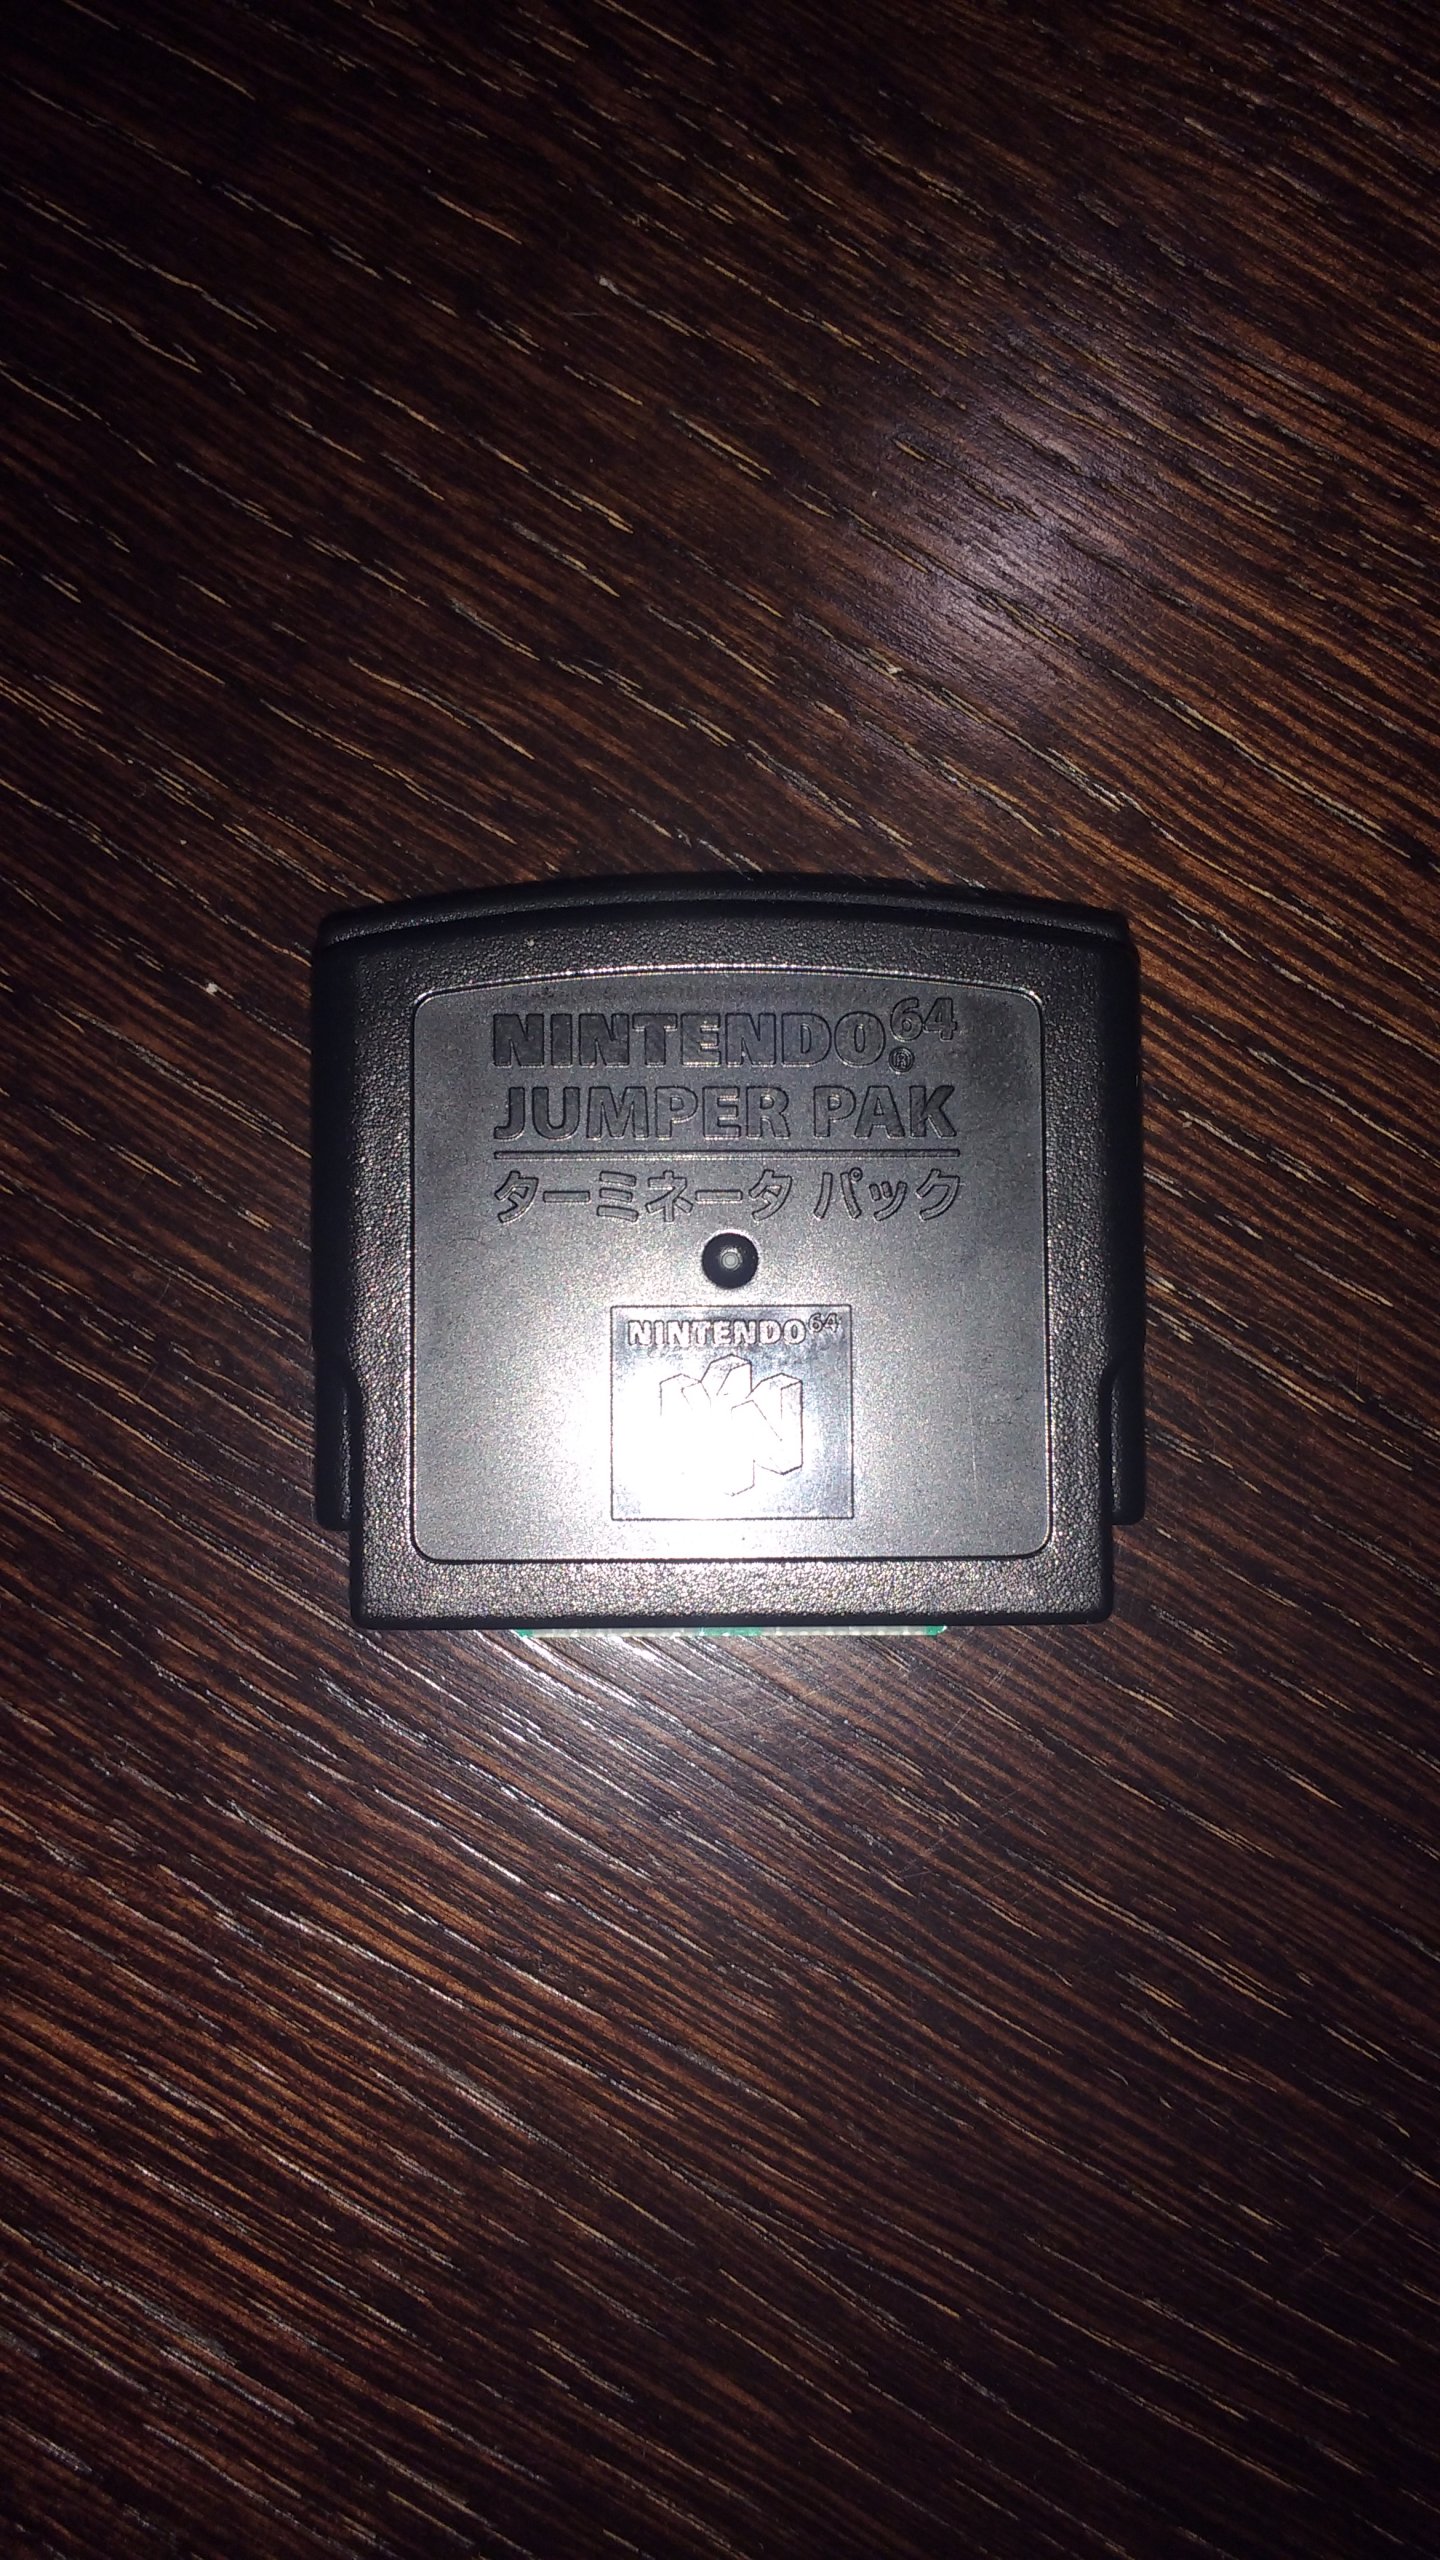 Nintendo 64 Jumper Pak karta pamięci